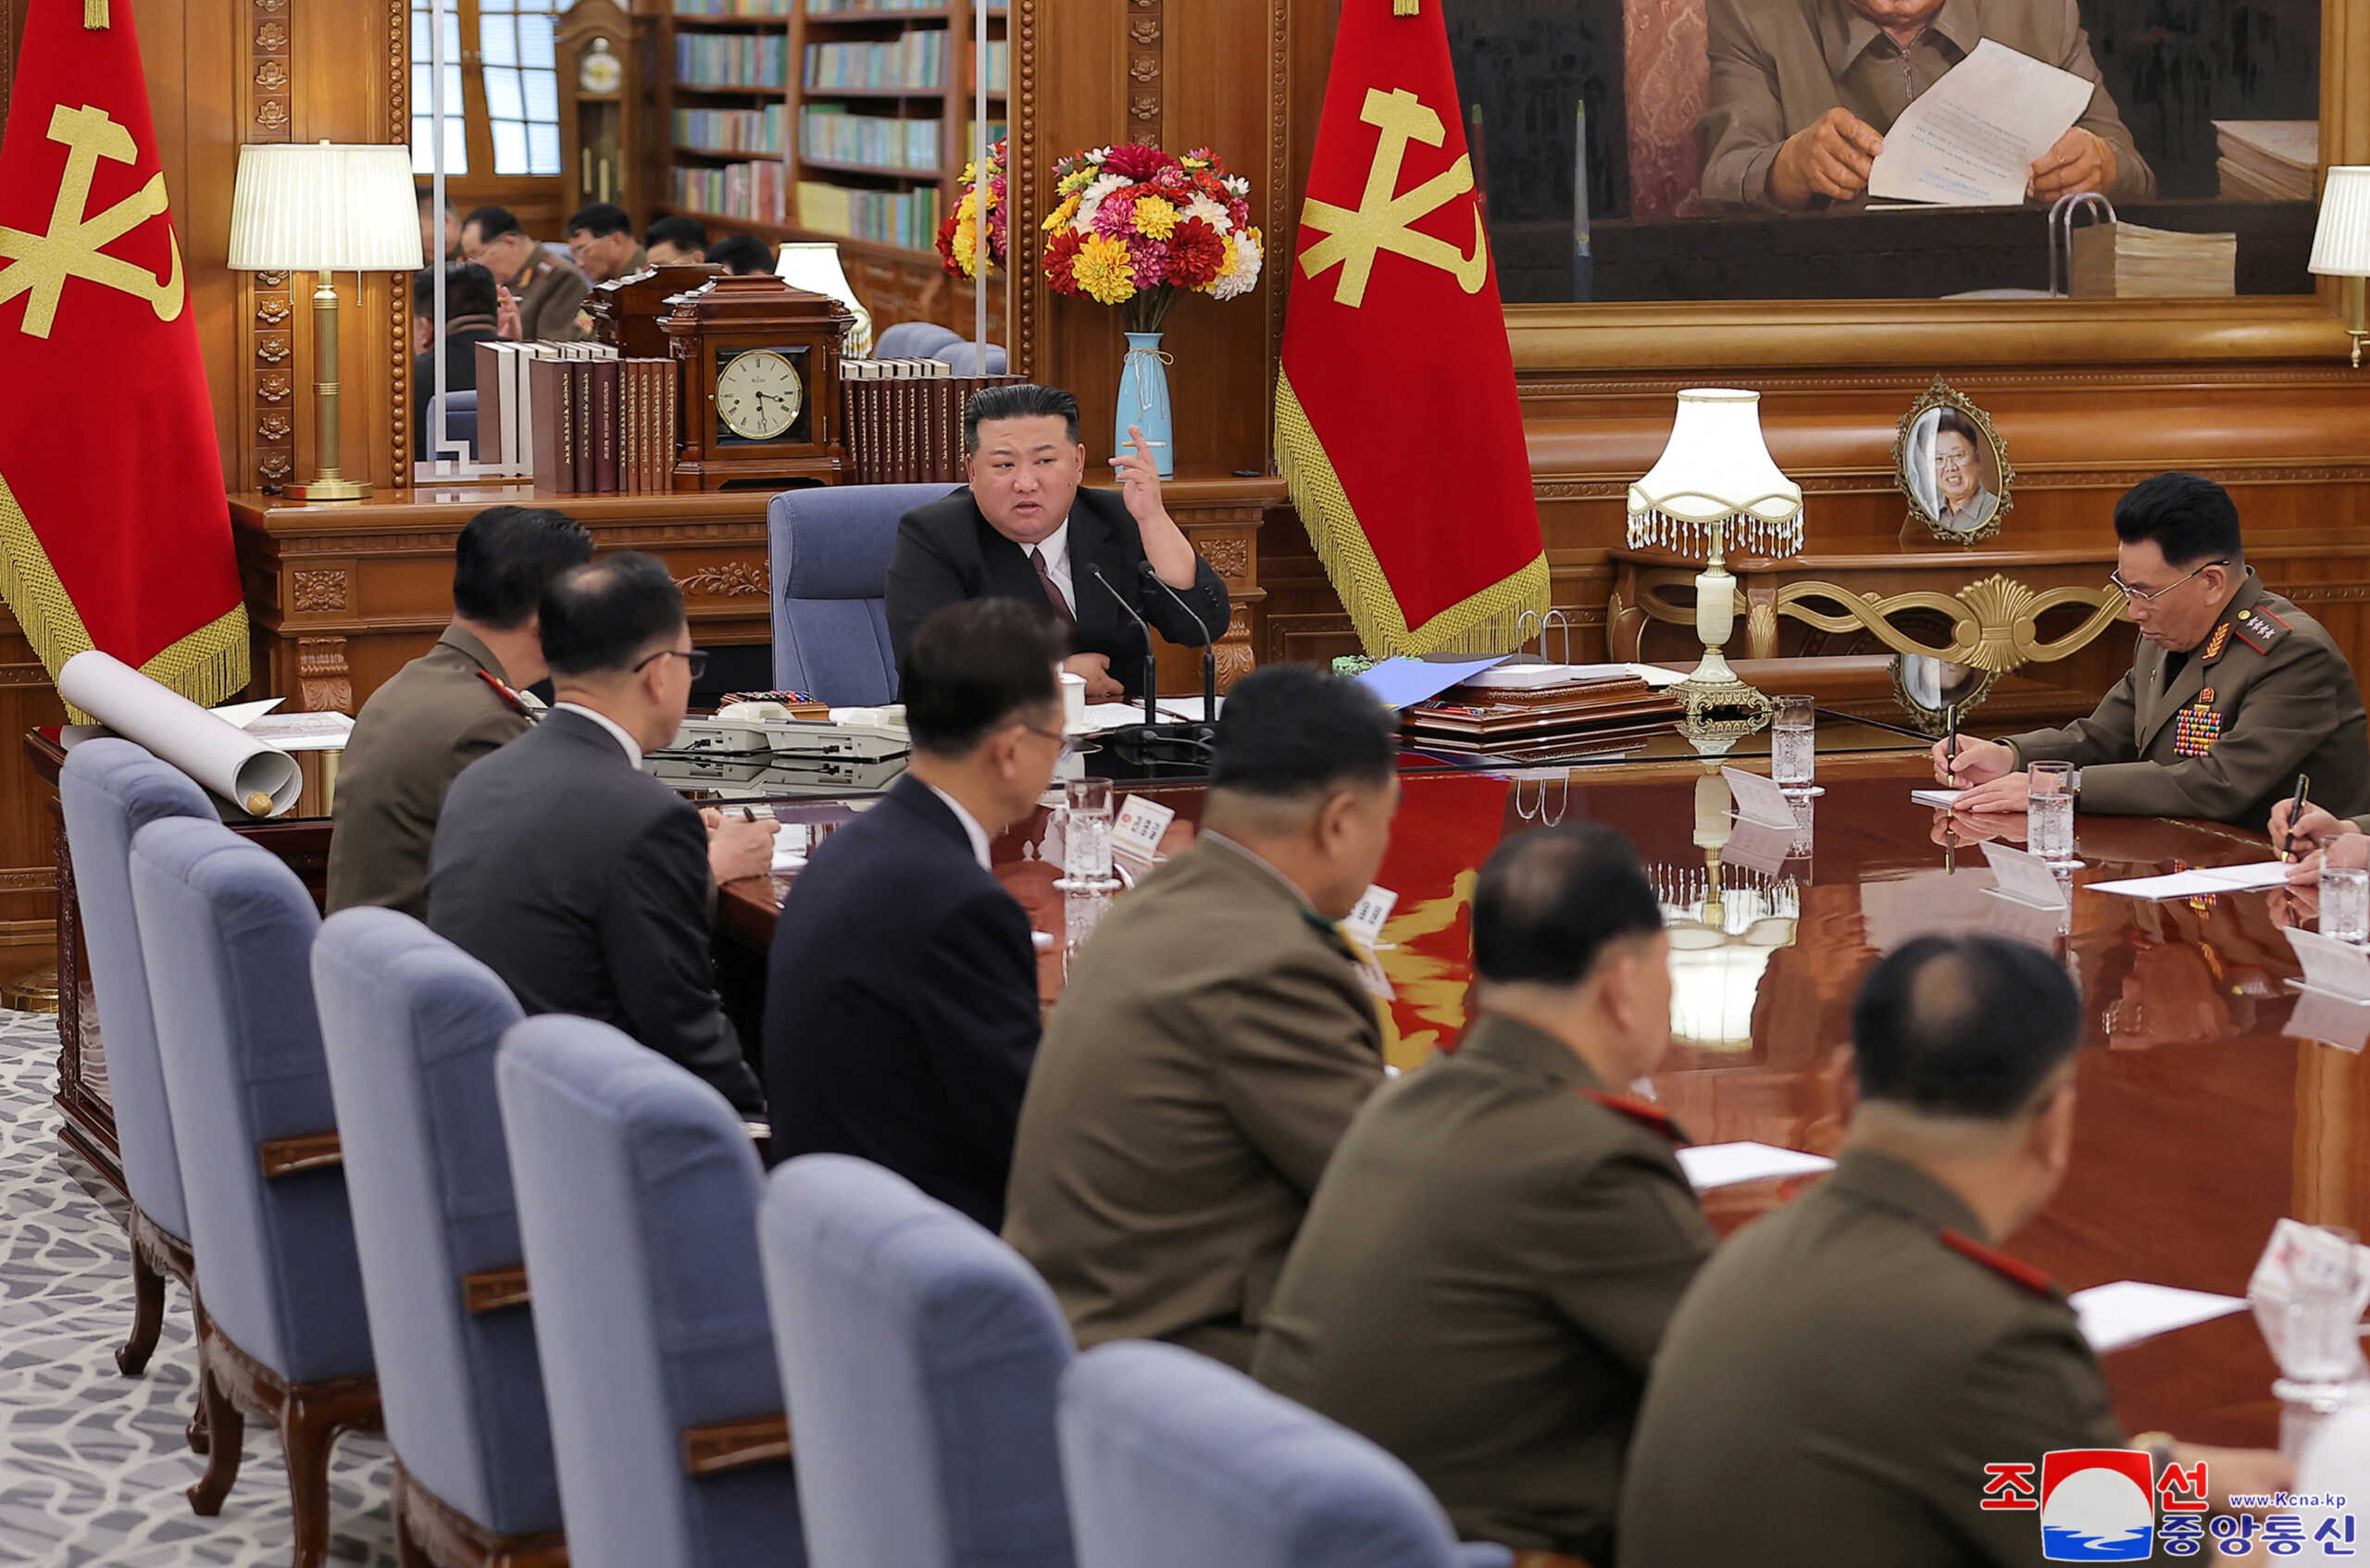 Ο Κιμ Γιονγκ Ουν απέλυσε τον αρχηγό των ενόπλων δυνάμεων – «Προετοιμαστείτε για πόλεμο»